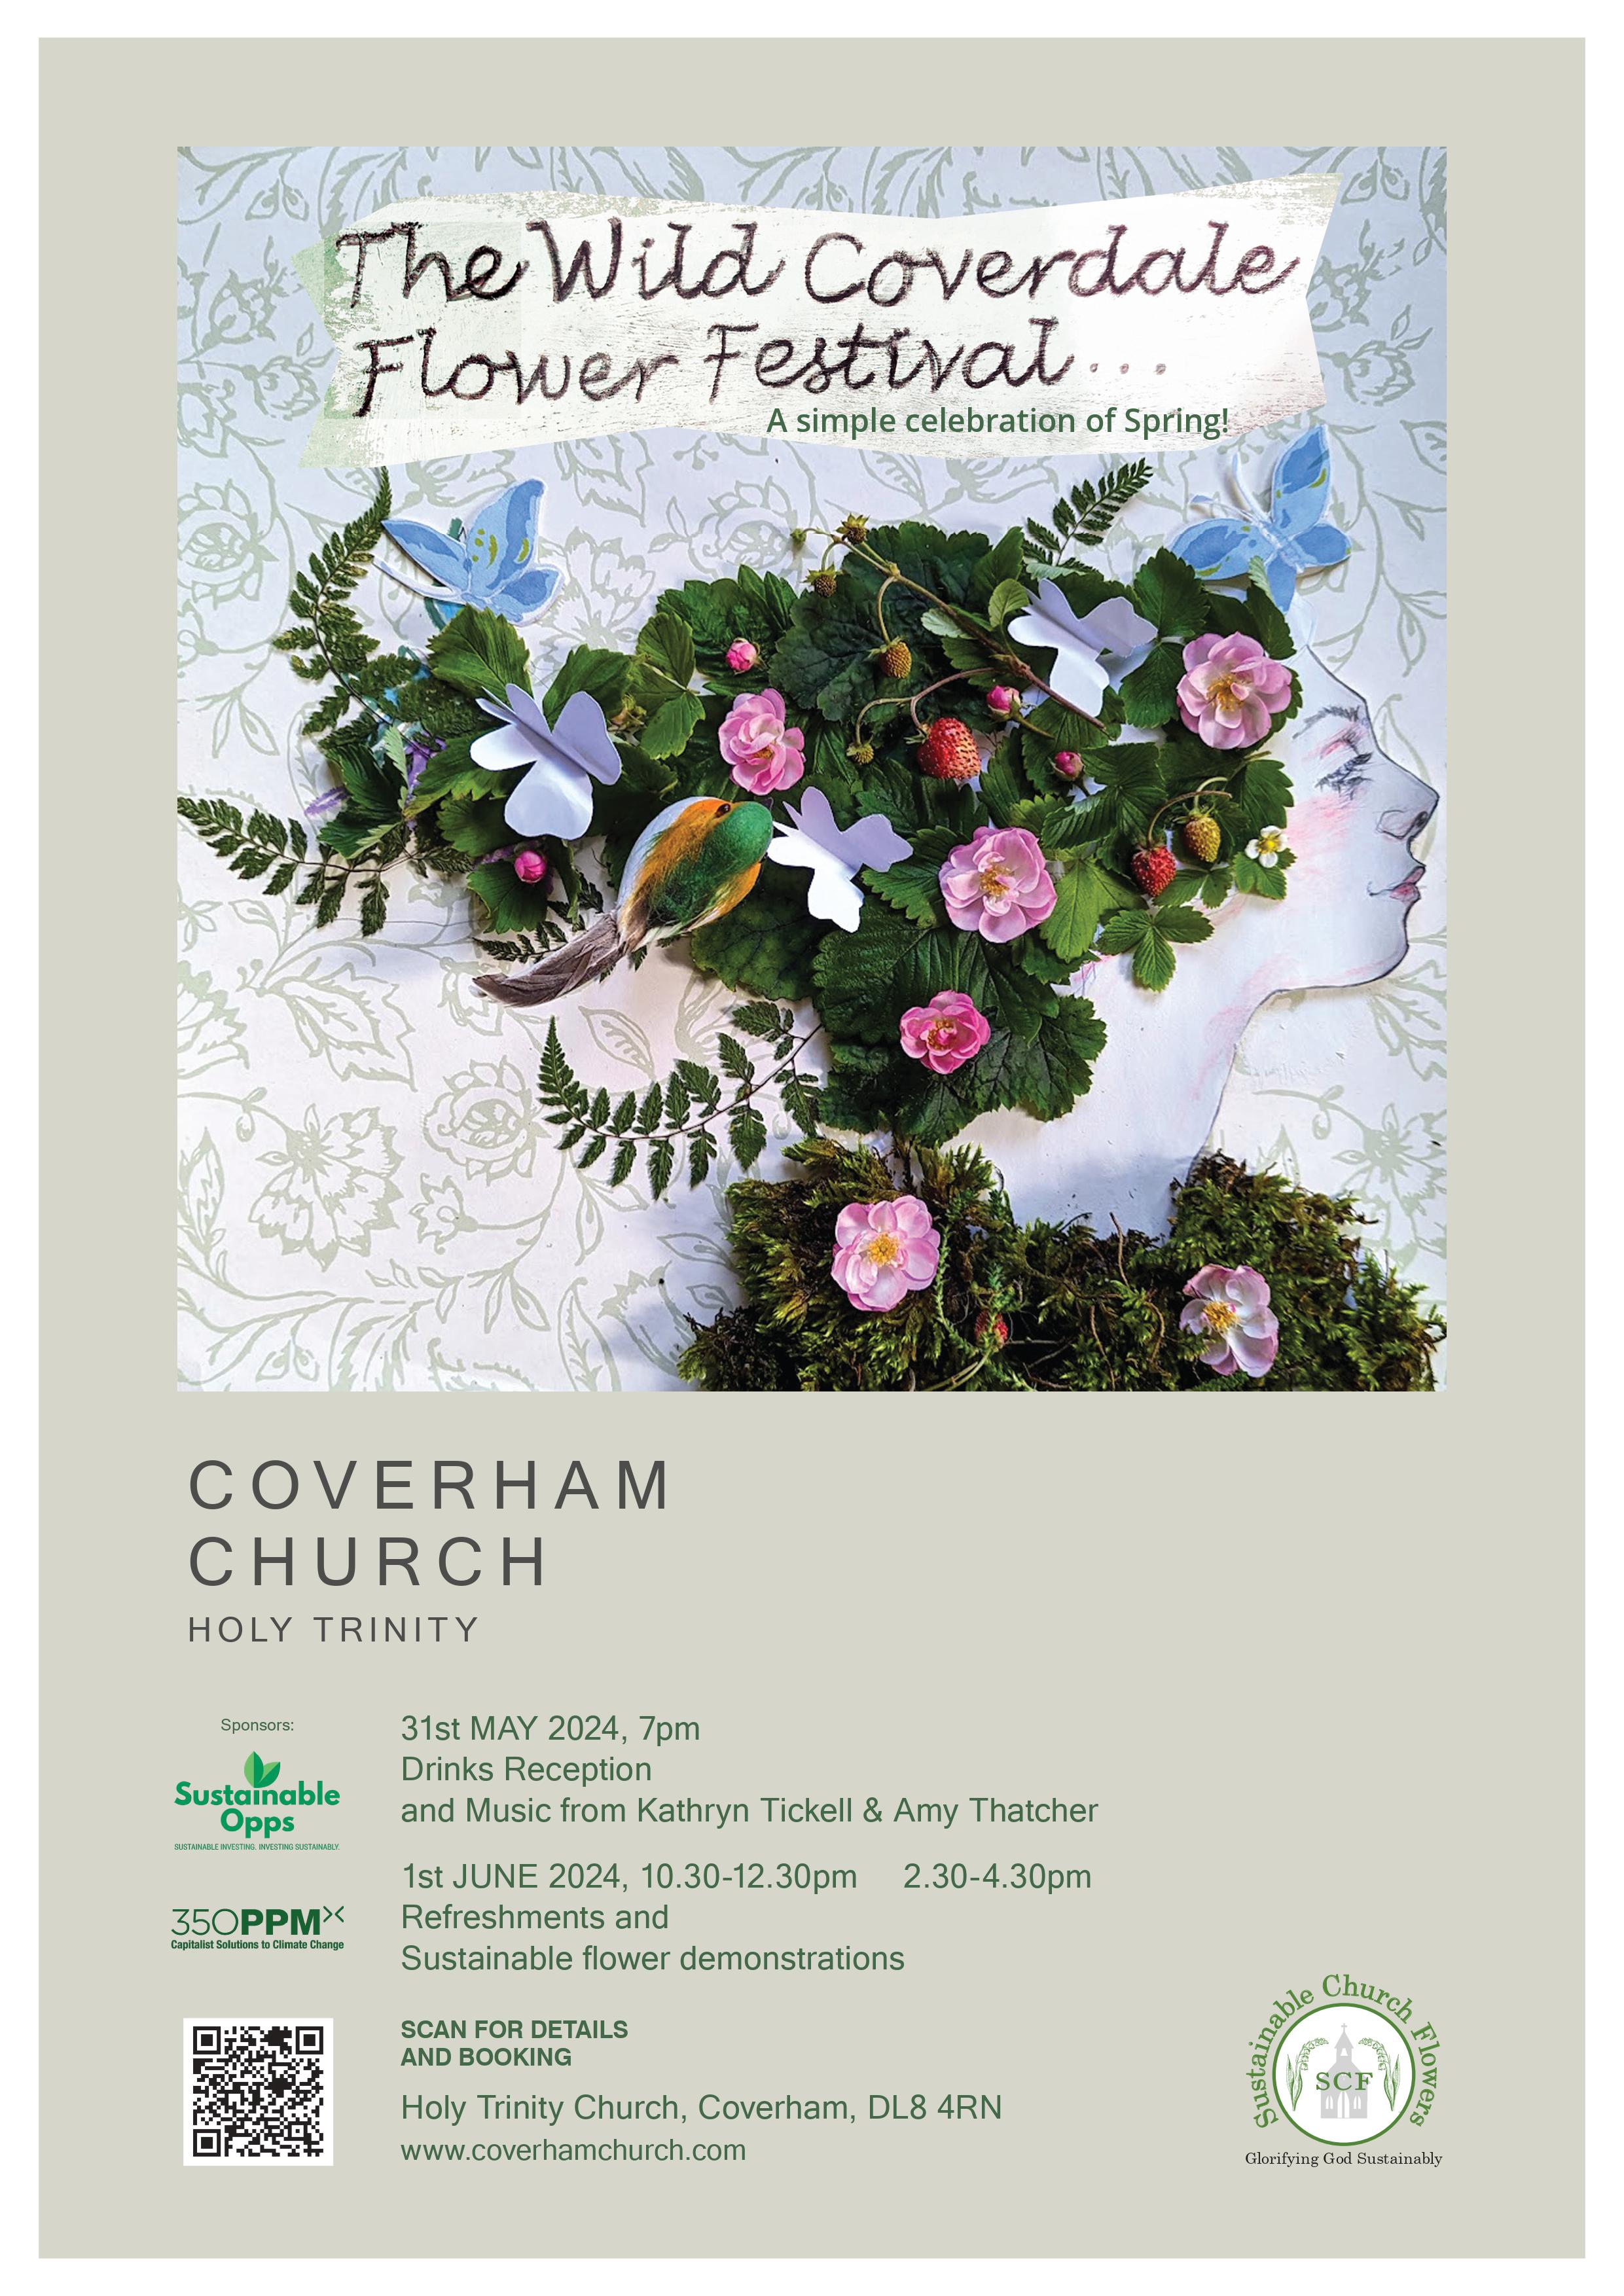 poster for THE WILD COVERDALE FLOWER FESTIVAL